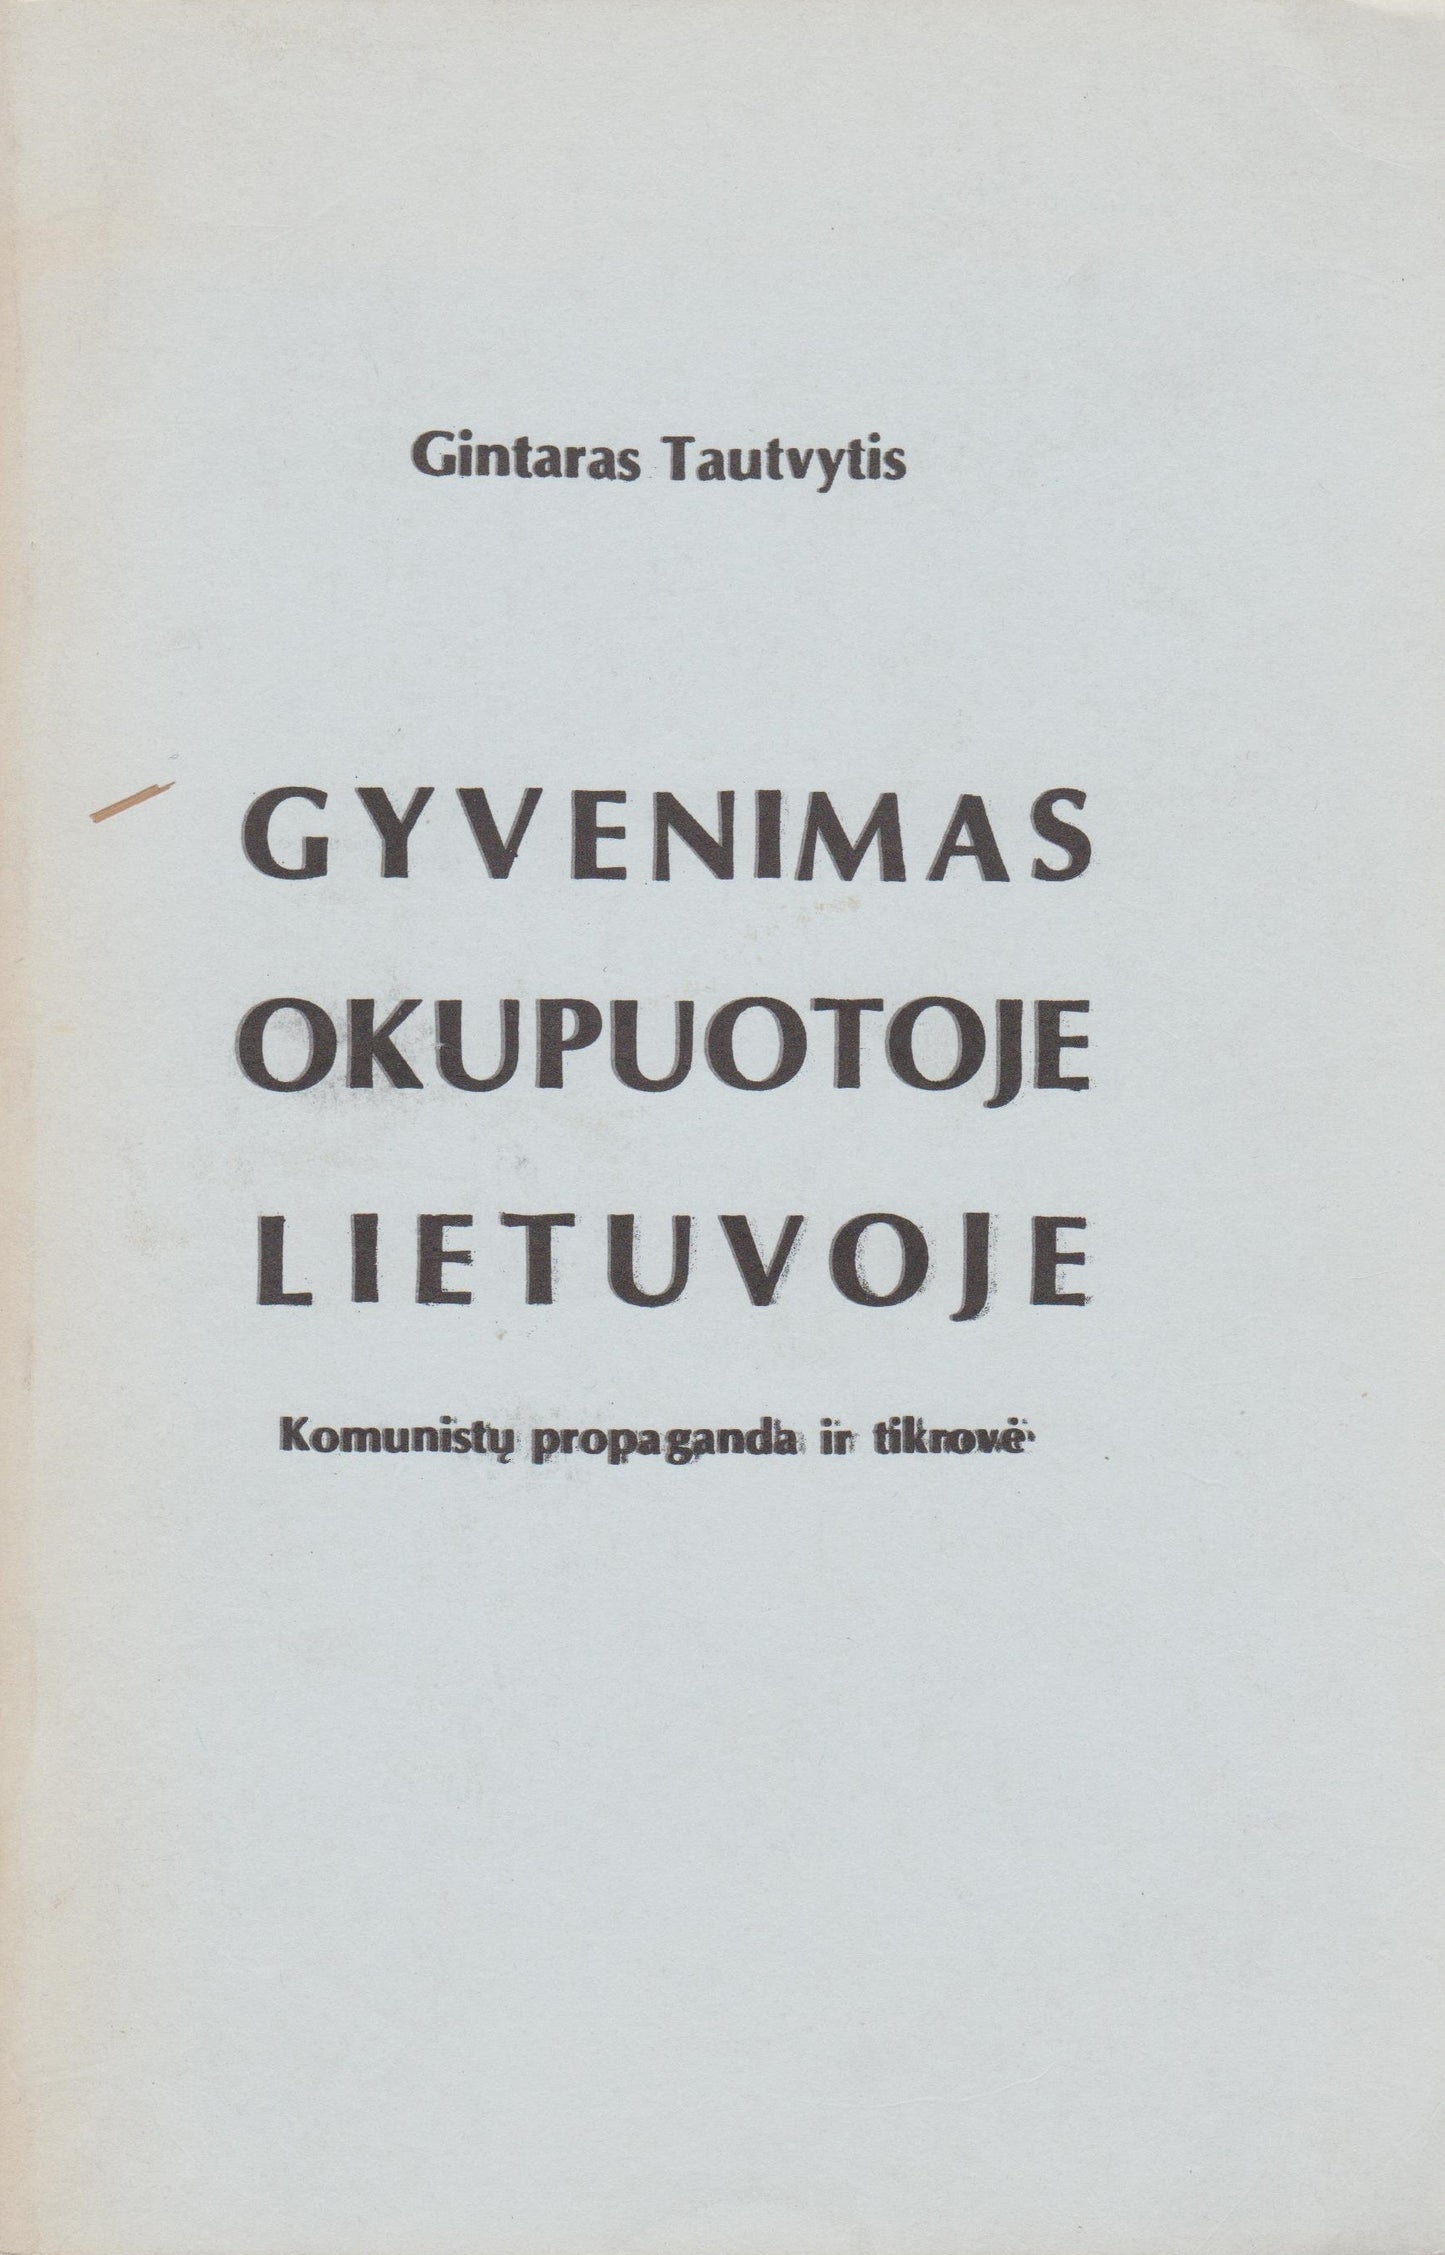 G. Tautvytis - Gyvenimas okupuotoje Lietuvoje, 1982 m. Chicago